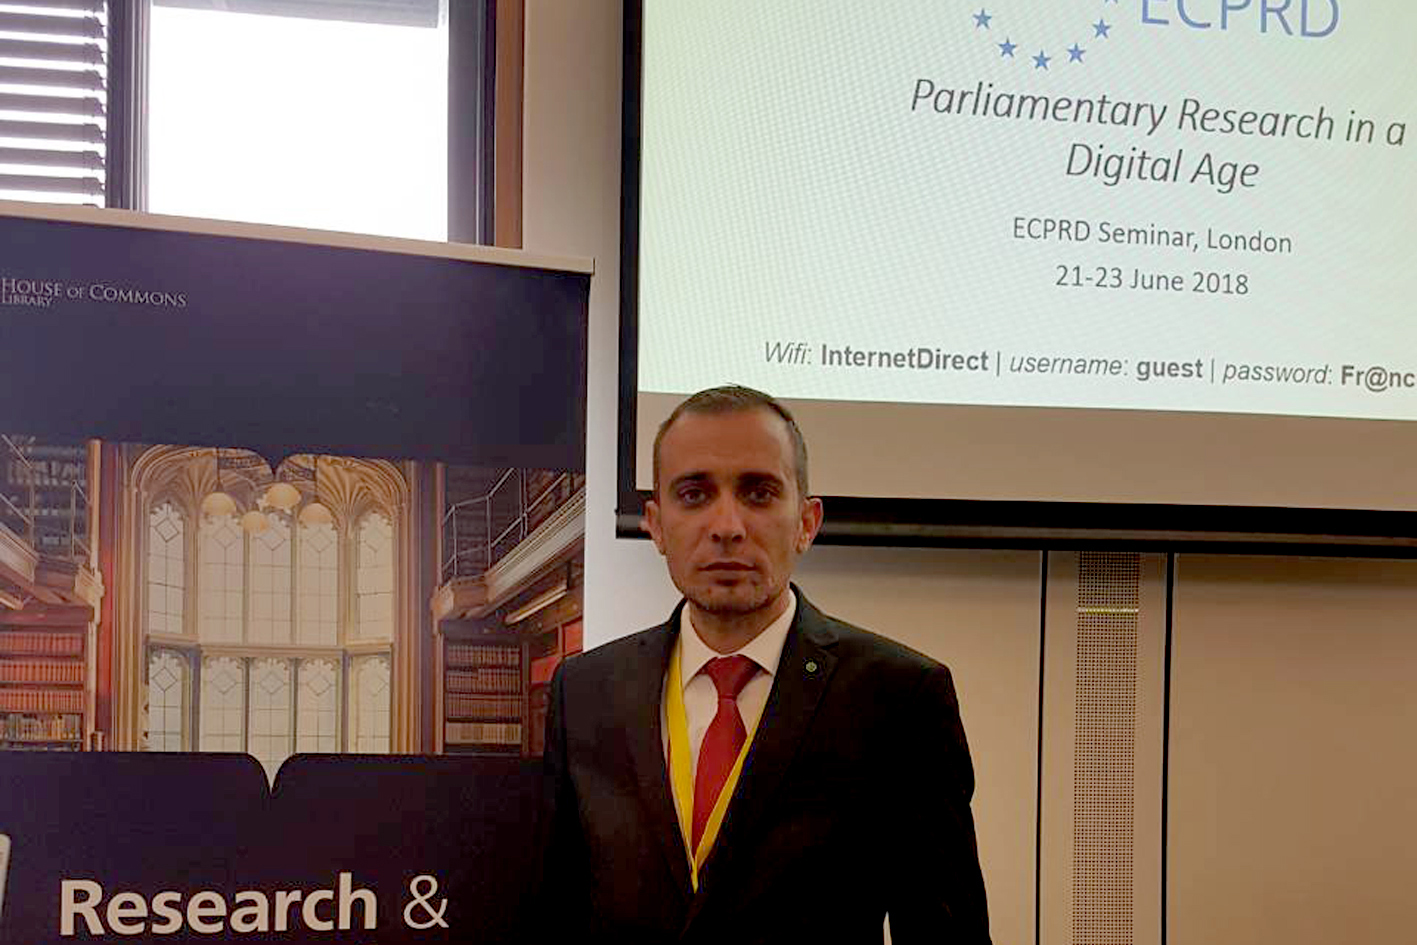 Sekretar Zajedničke službe Parlamentarne skupštine BiH Kenan Vehabović učestvuje na ECPRD-ovom seminaru u Londonu